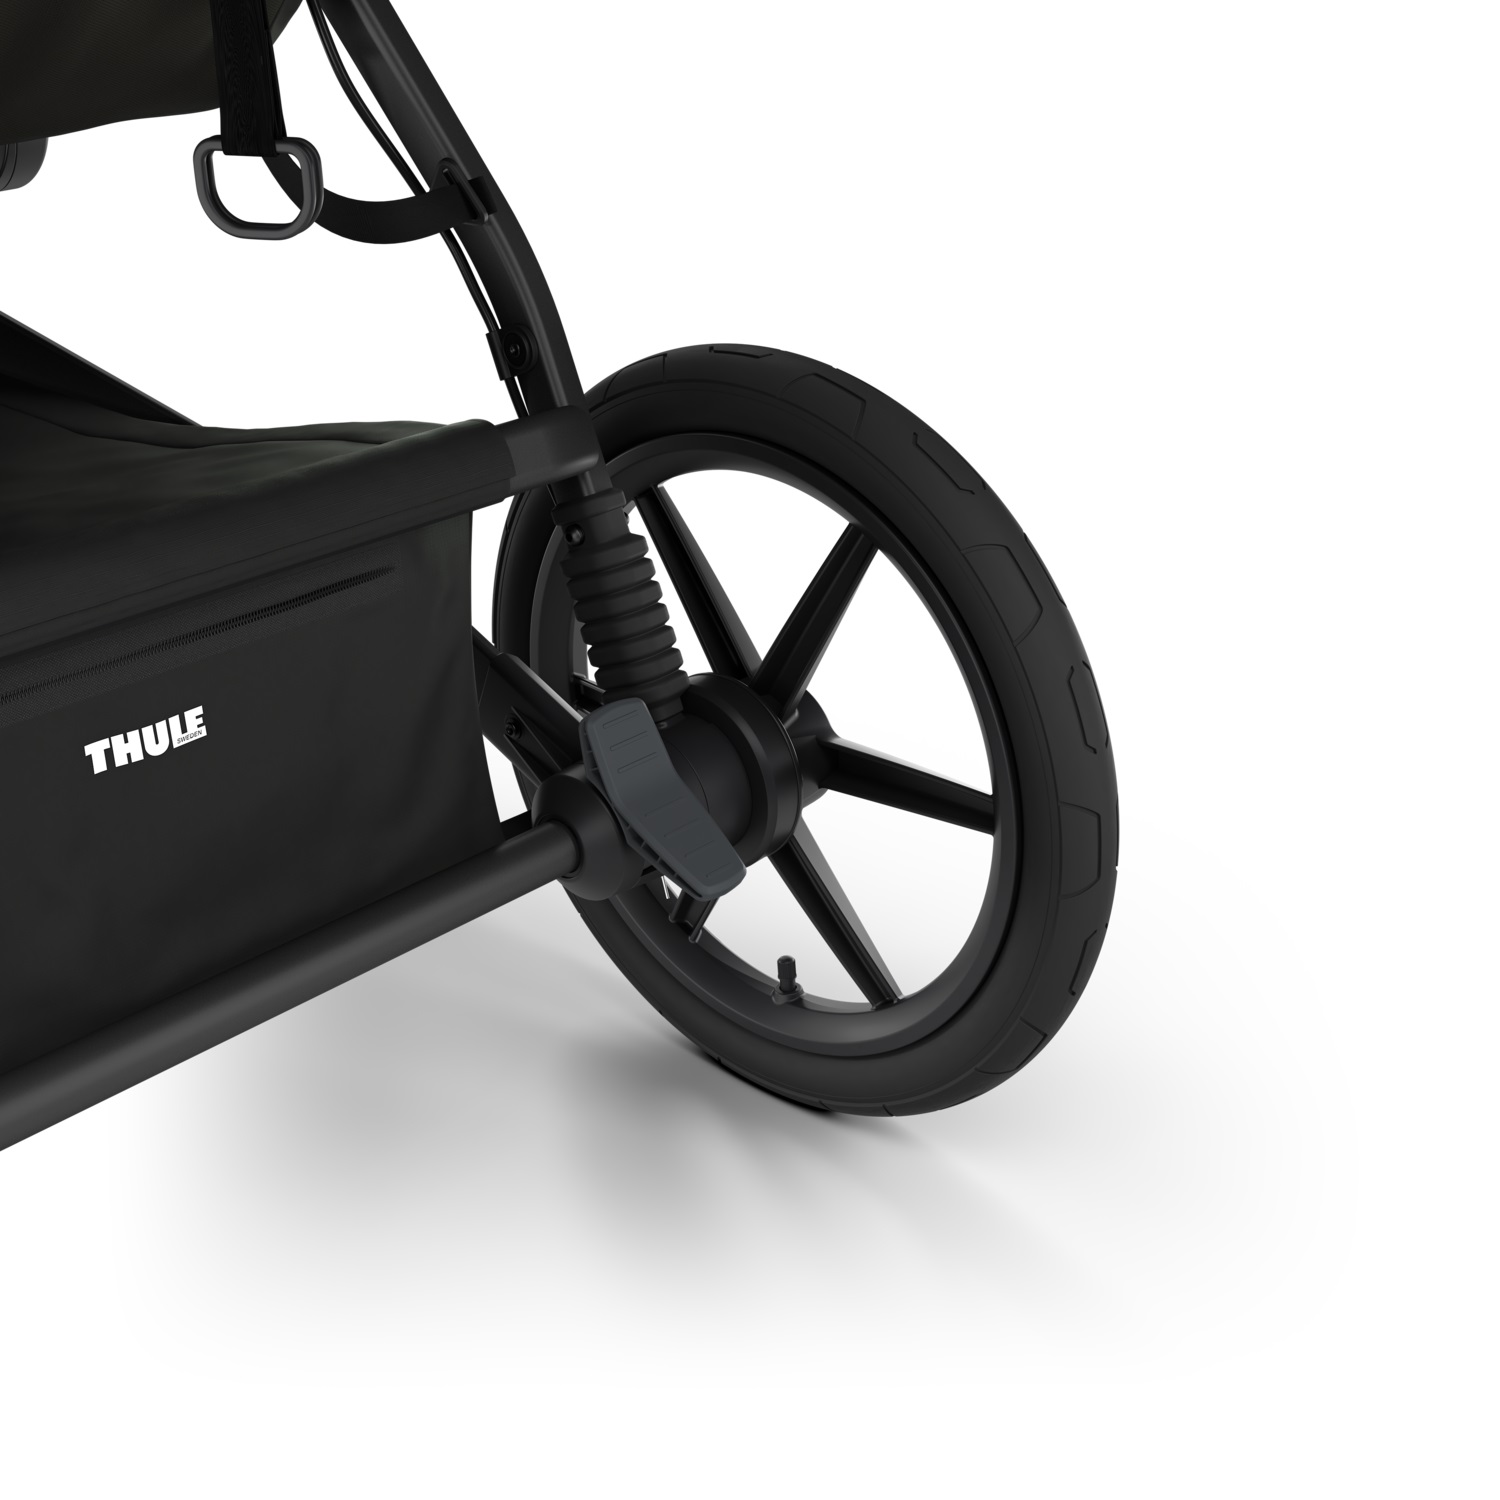 Thule Urban Glide (4 kotača) univerzalna kolica za sve terene crne boje